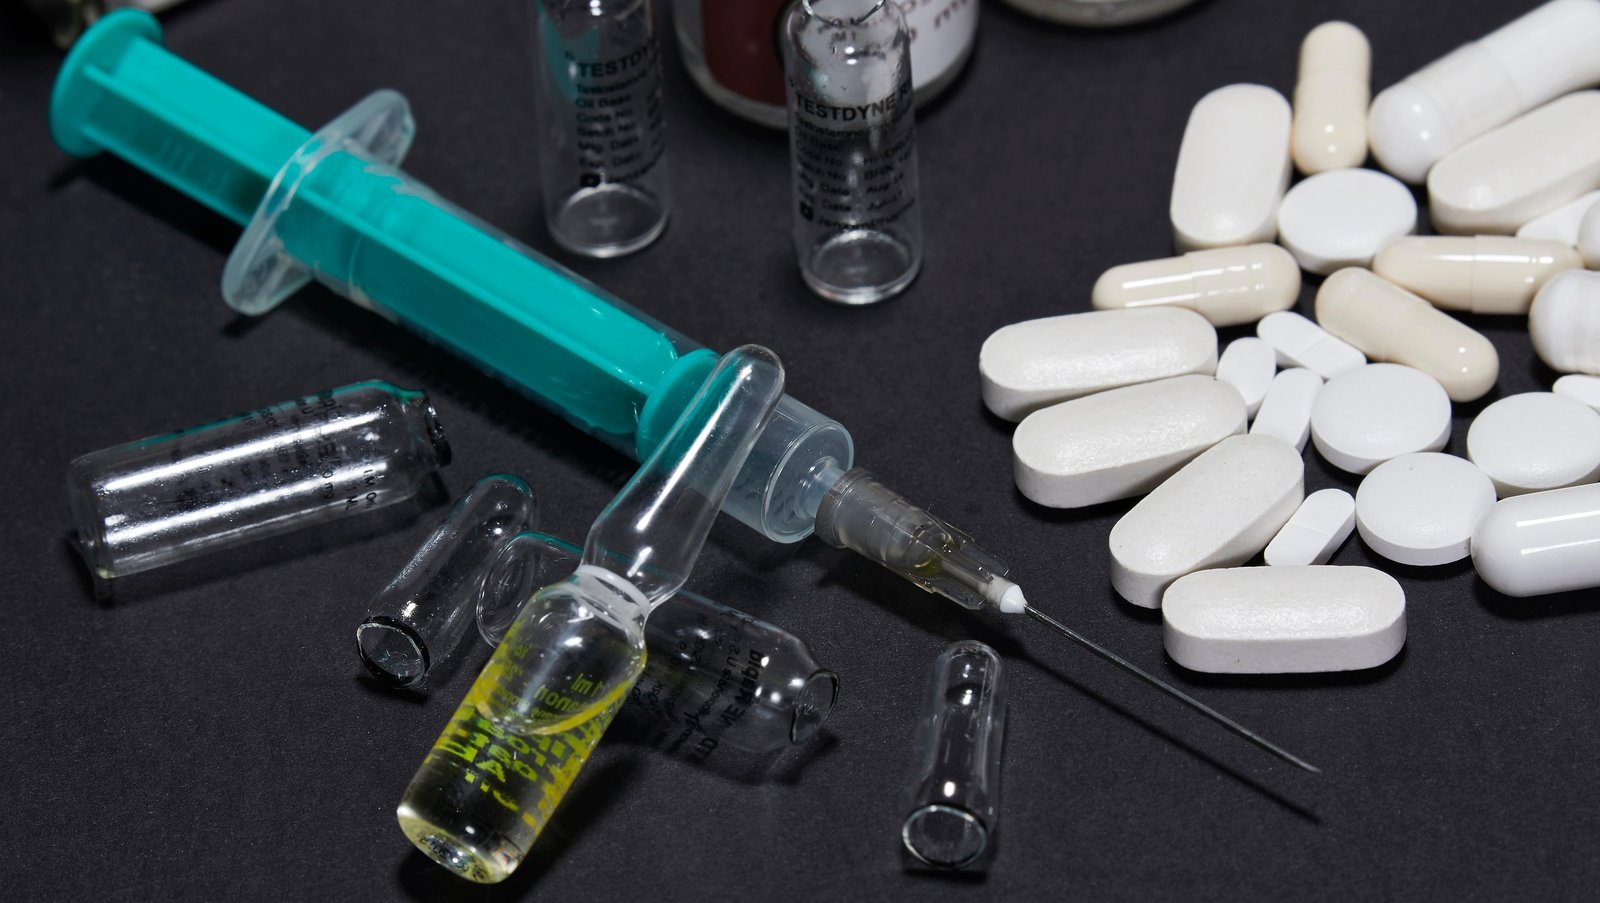 40% rise in illegal prescription drugs seized